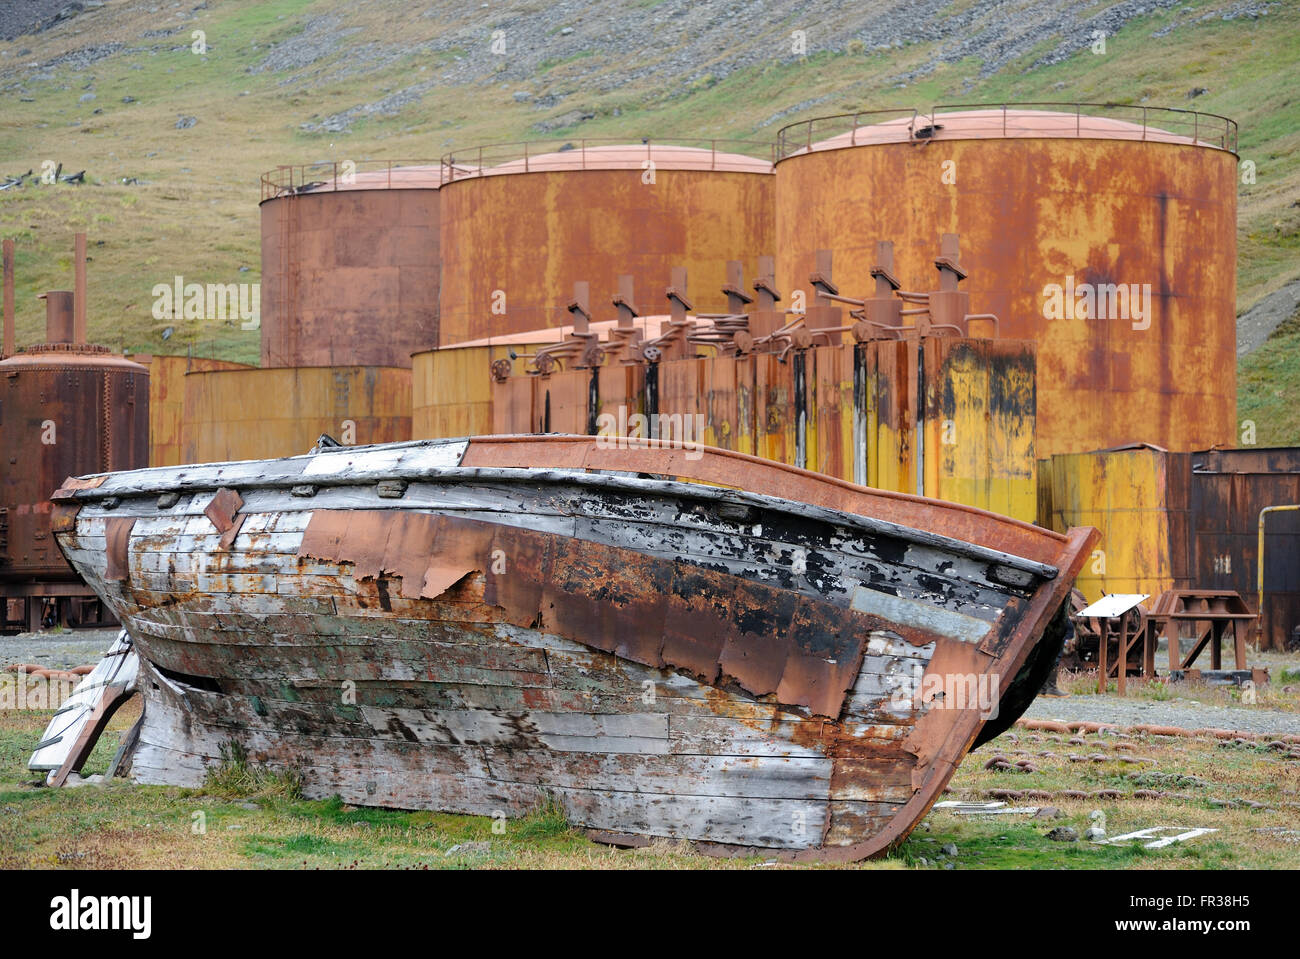 Un bateau pourrit parmi la rouille des réservoirs pour le stockage de l'huile de phoque et de baleine dans la station baleinière. Grytviken, Géorgie du Sud Banque D'Images